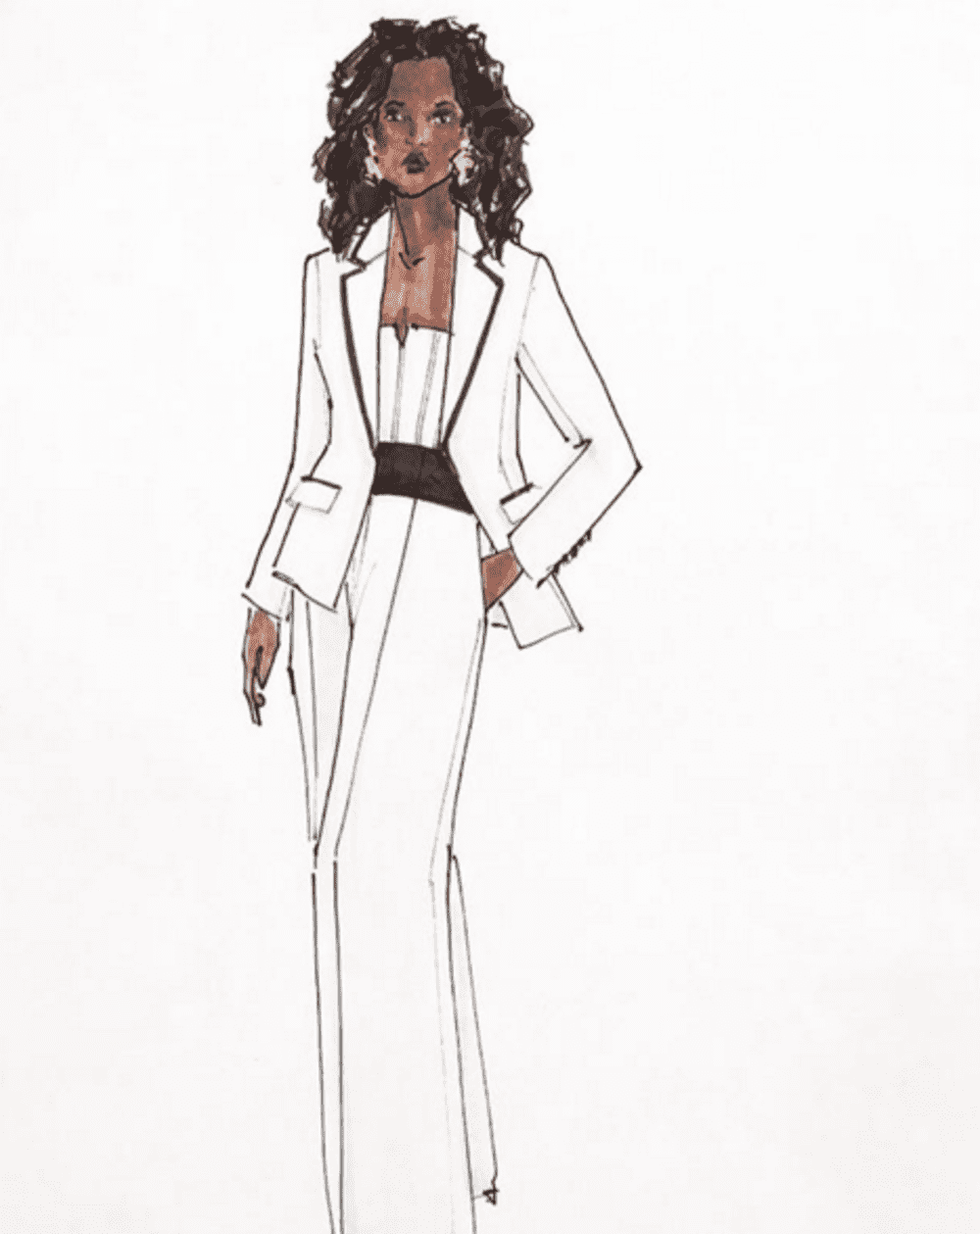 Sketch of Oprah Winfrey pantsuit designed by Elizabeth Kennedy